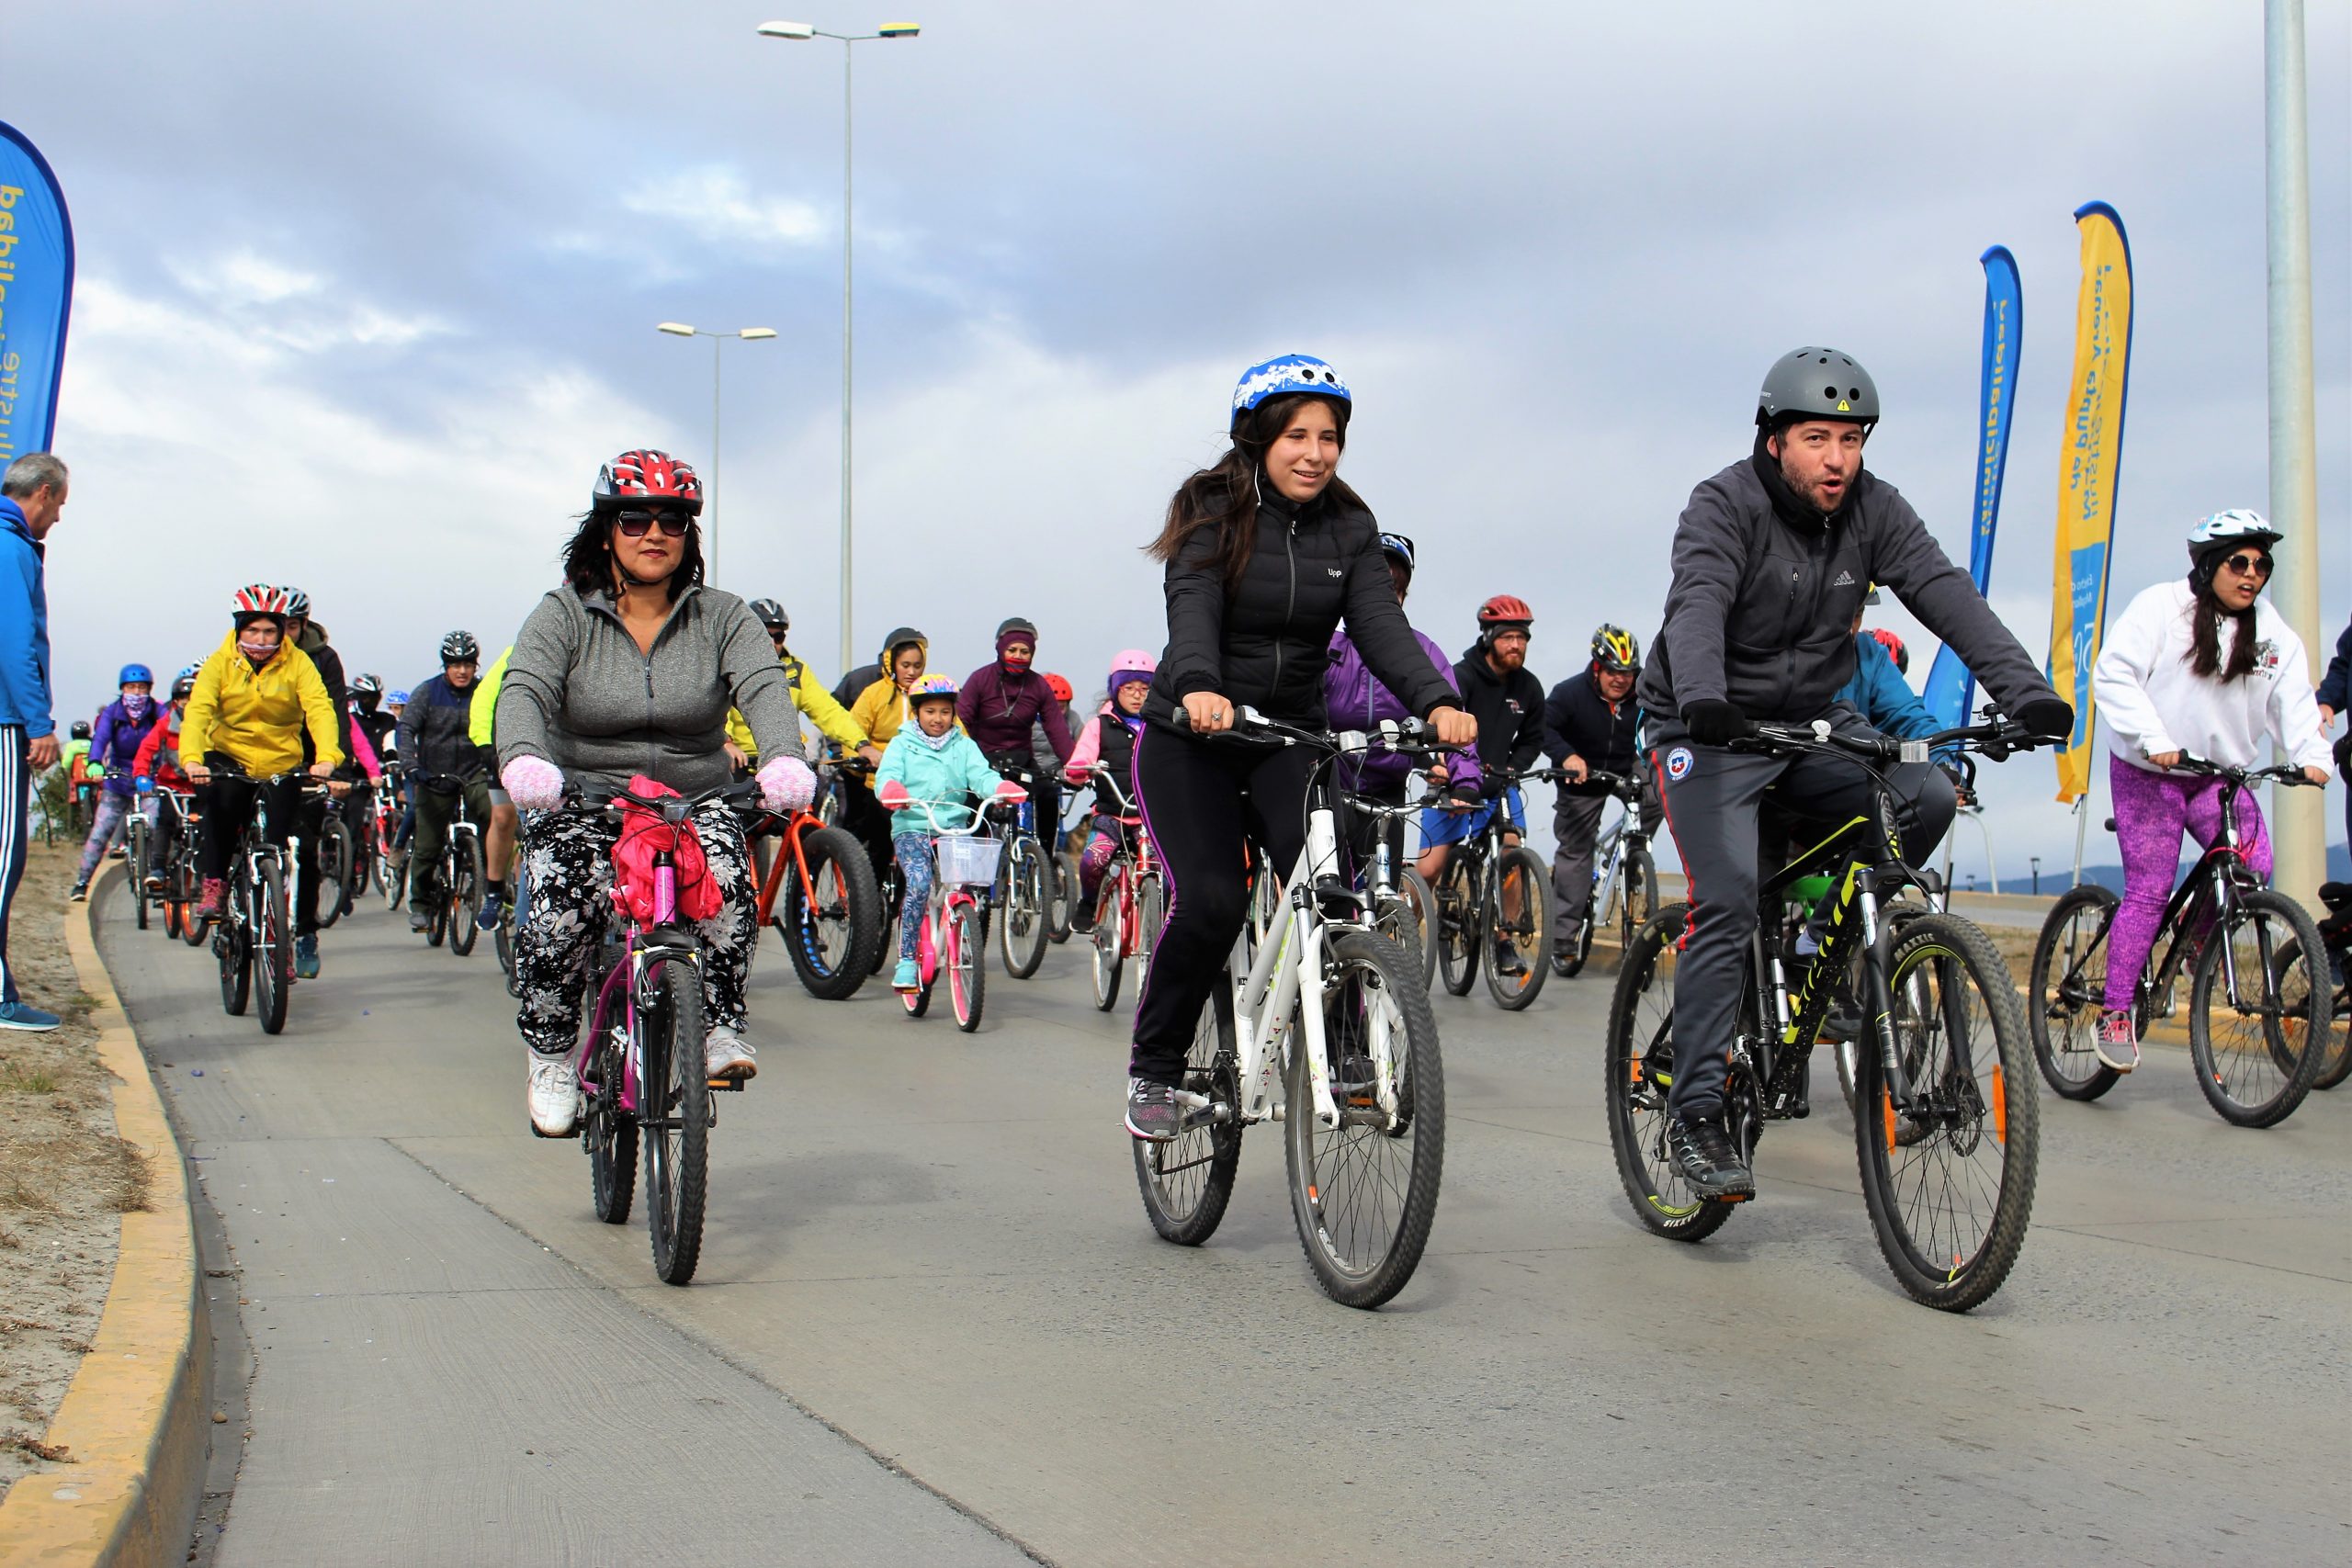 Con caminata y cicletada para toda la familia, Municipio de Punta Arenas invita a hacer deportes este fin de semana